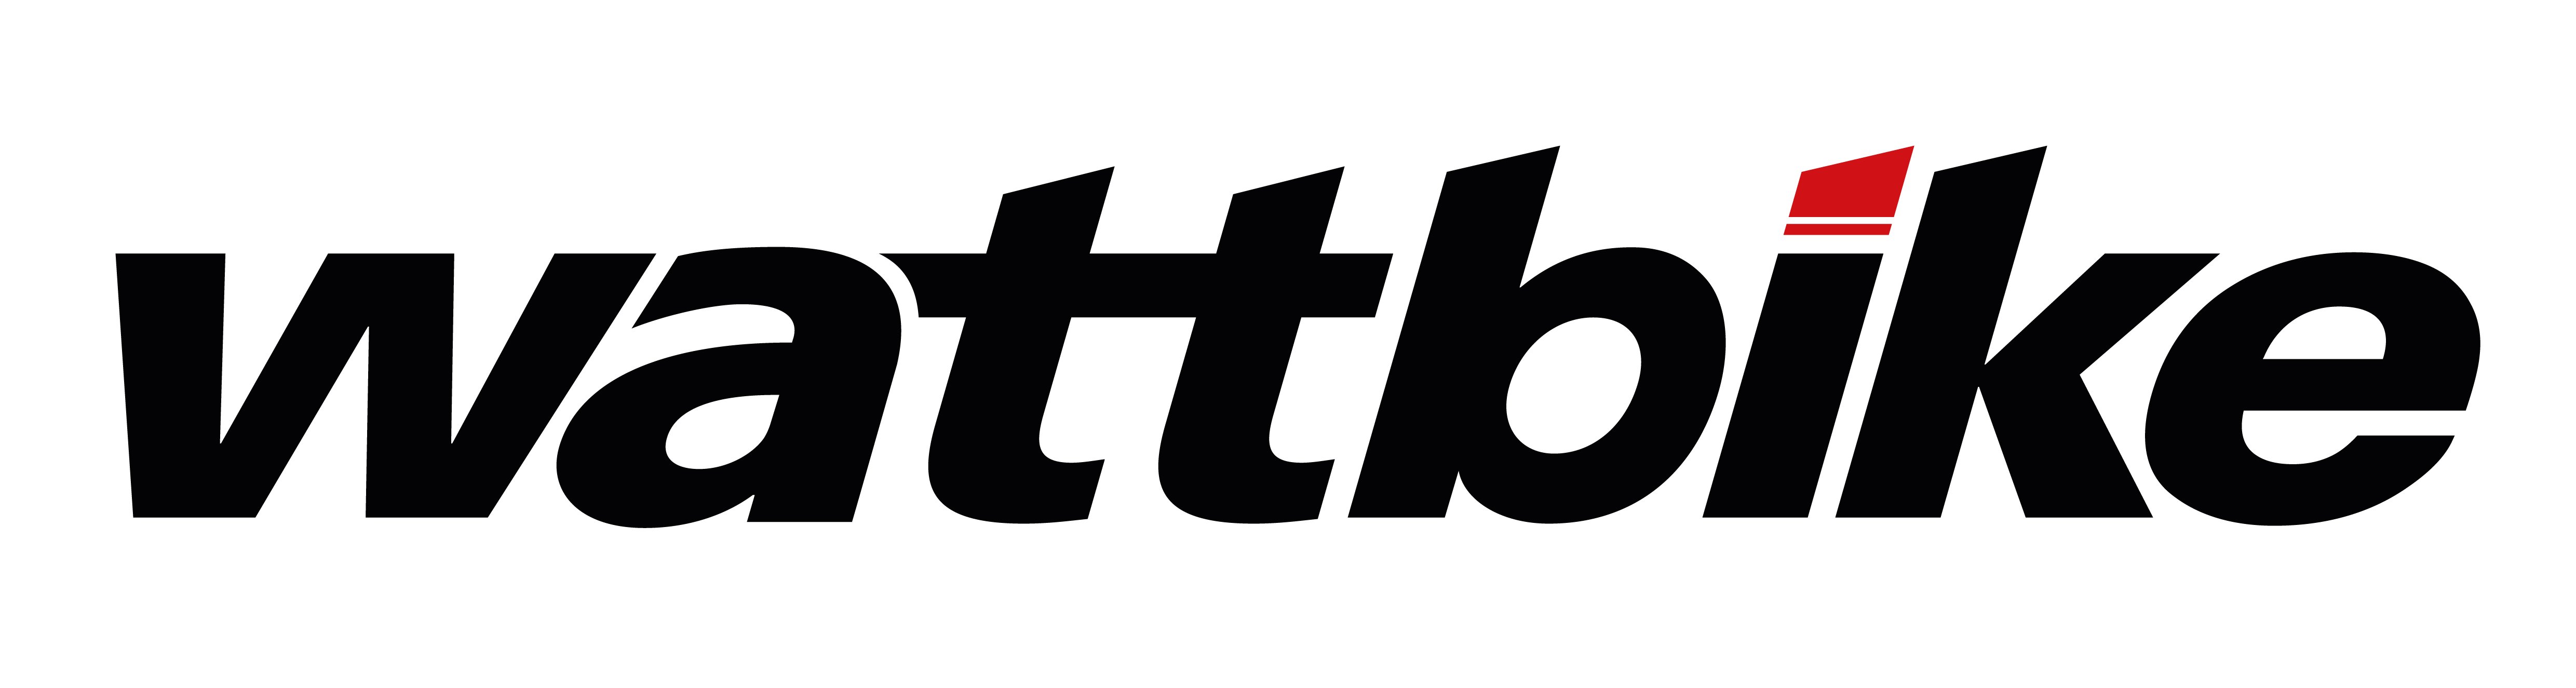 wattbike-logo